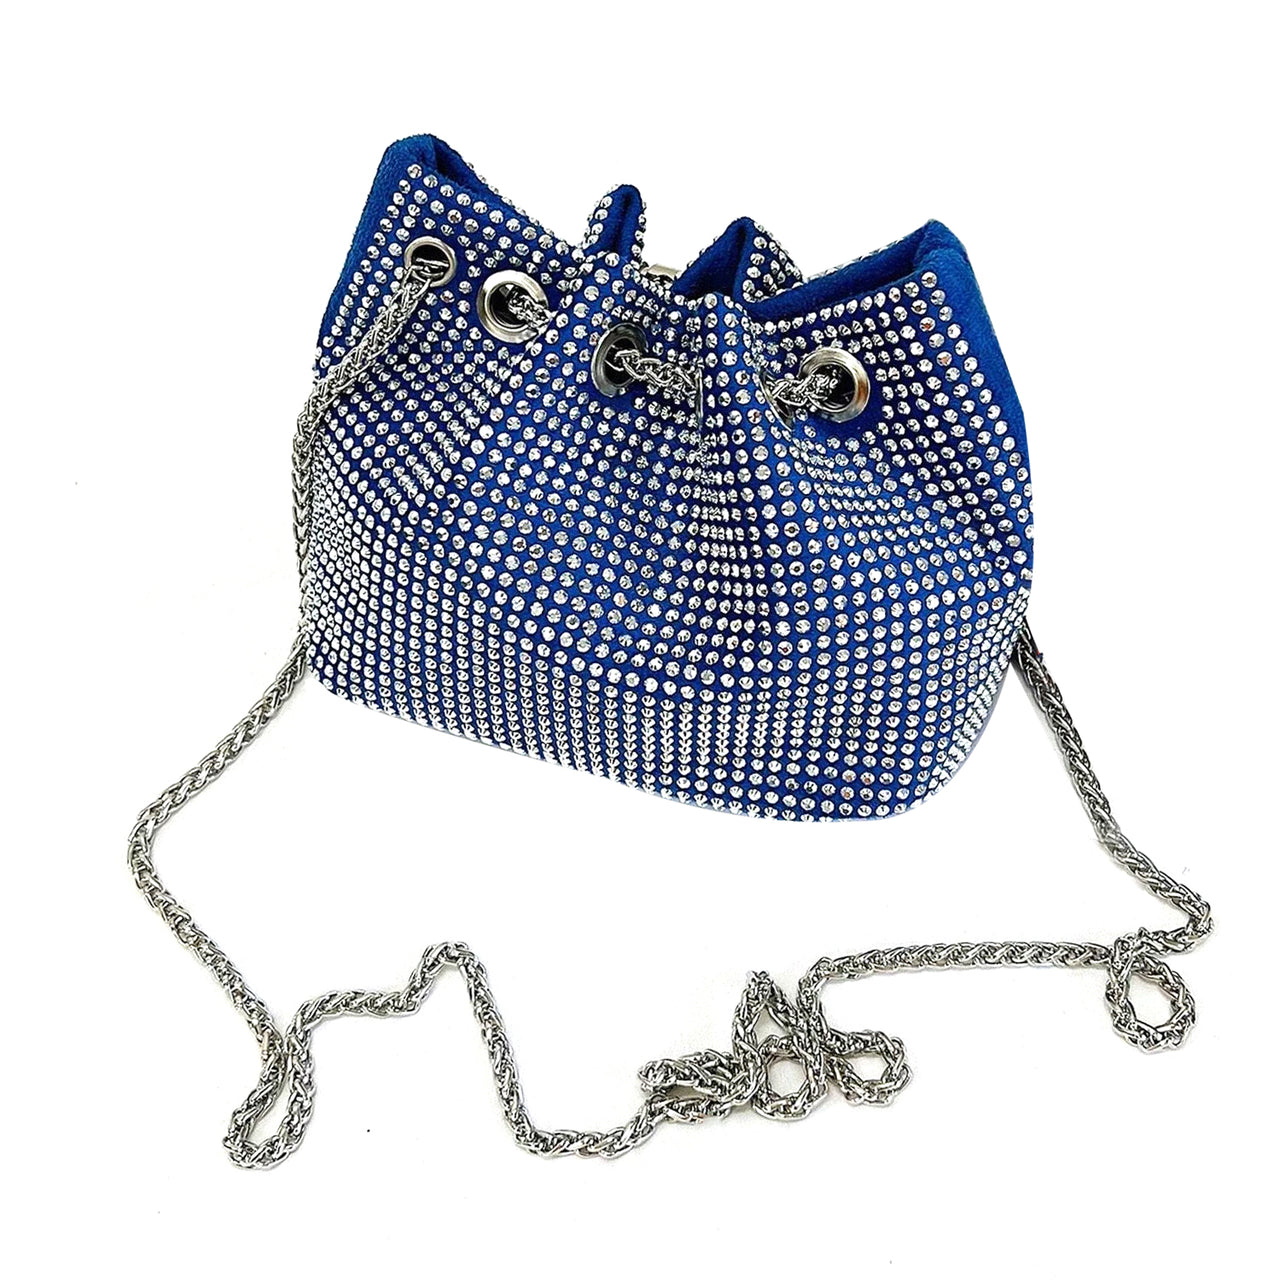 Rhinestone Clutch Pearl Handbag